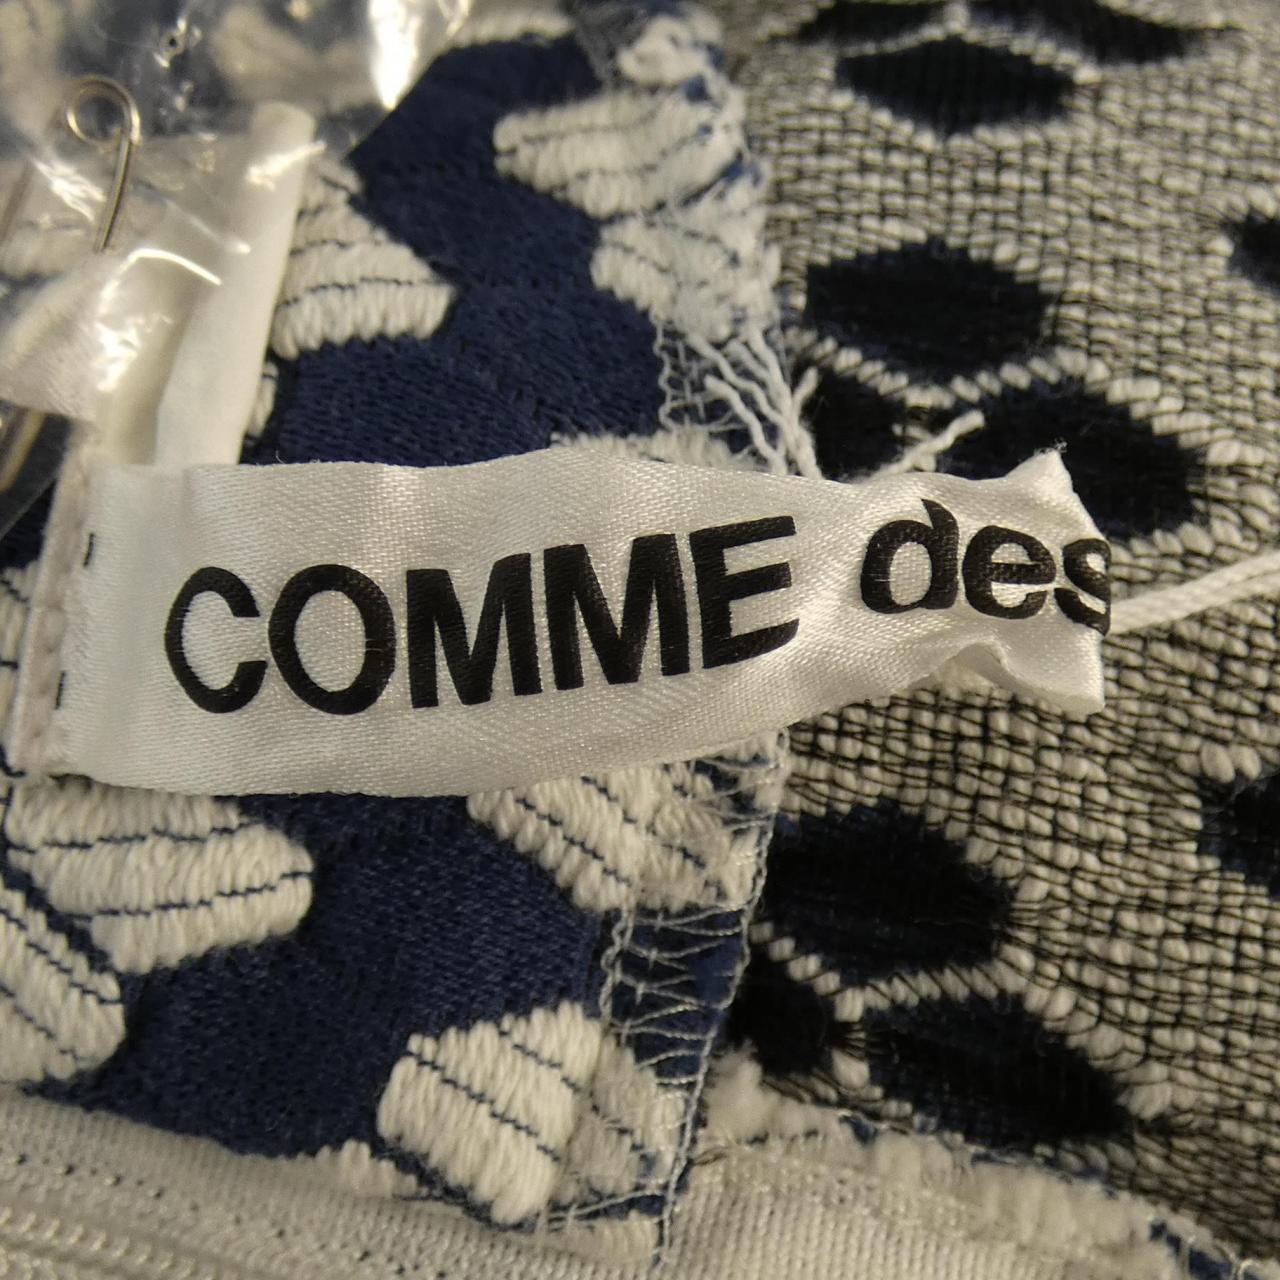 COMMME des GARCONS连衣裙